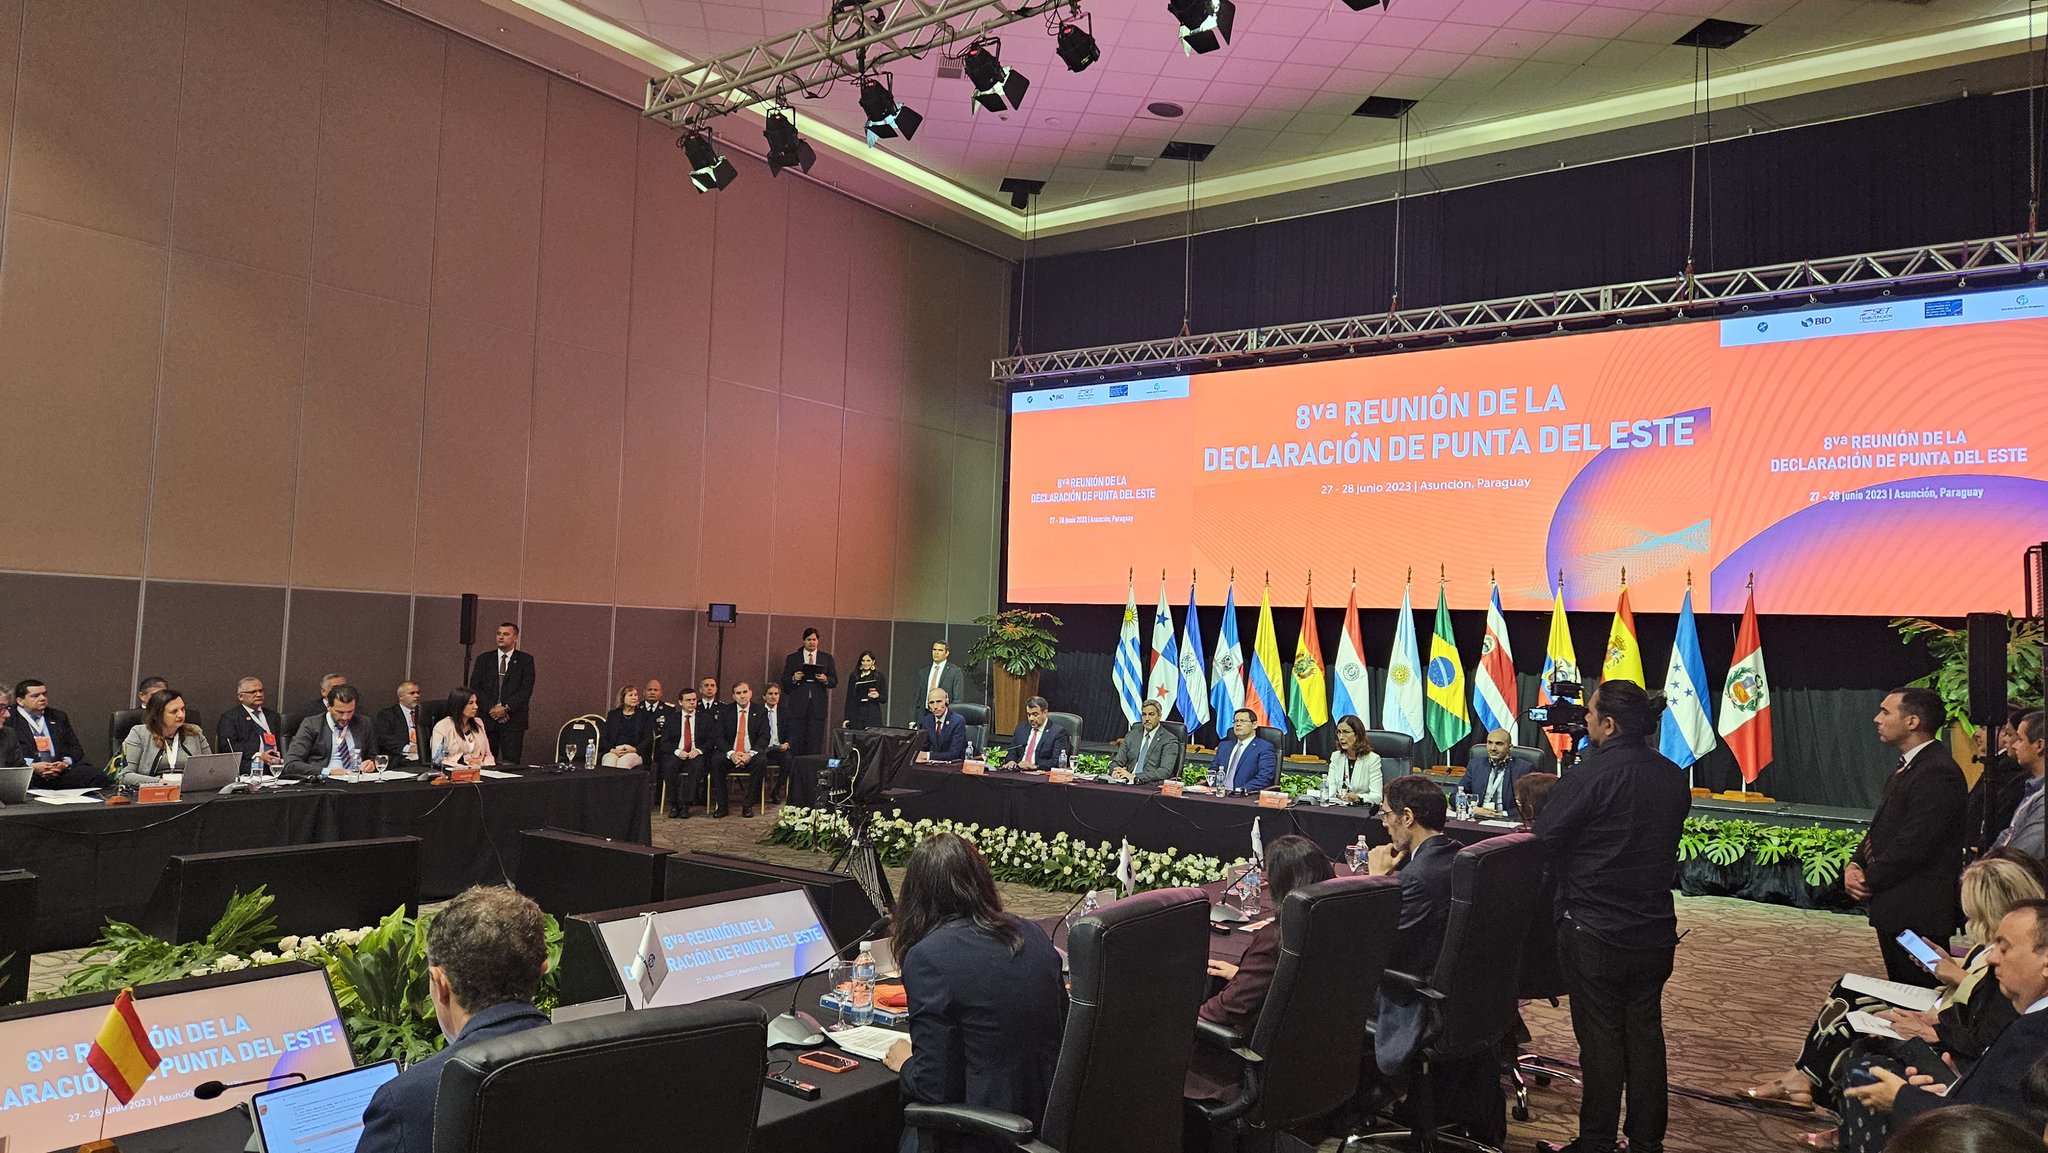 8va. Reunión de la Declaración de Punta del Este sobre transparencia fiscal se lleva a cabo en nuestro país